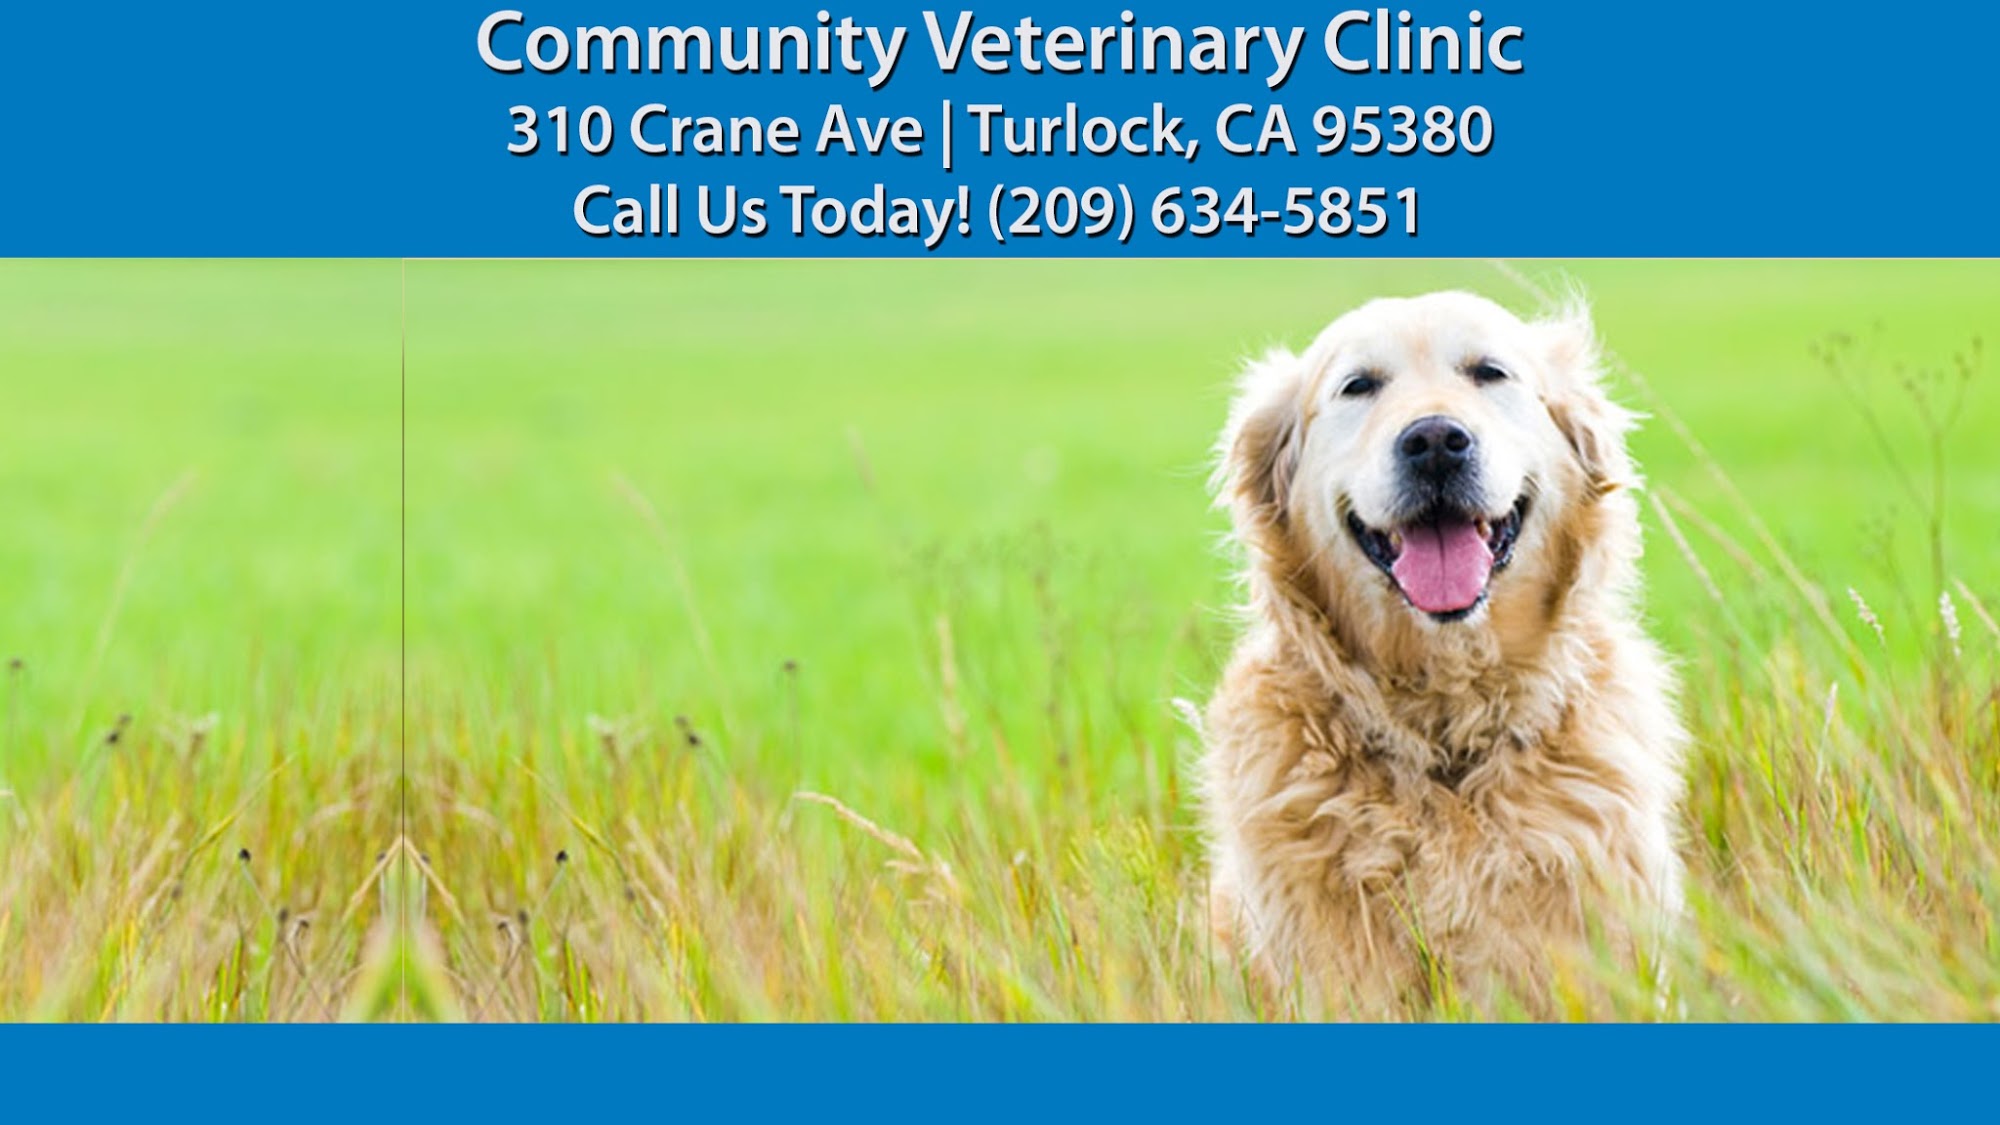 Community Veterinary Clinic